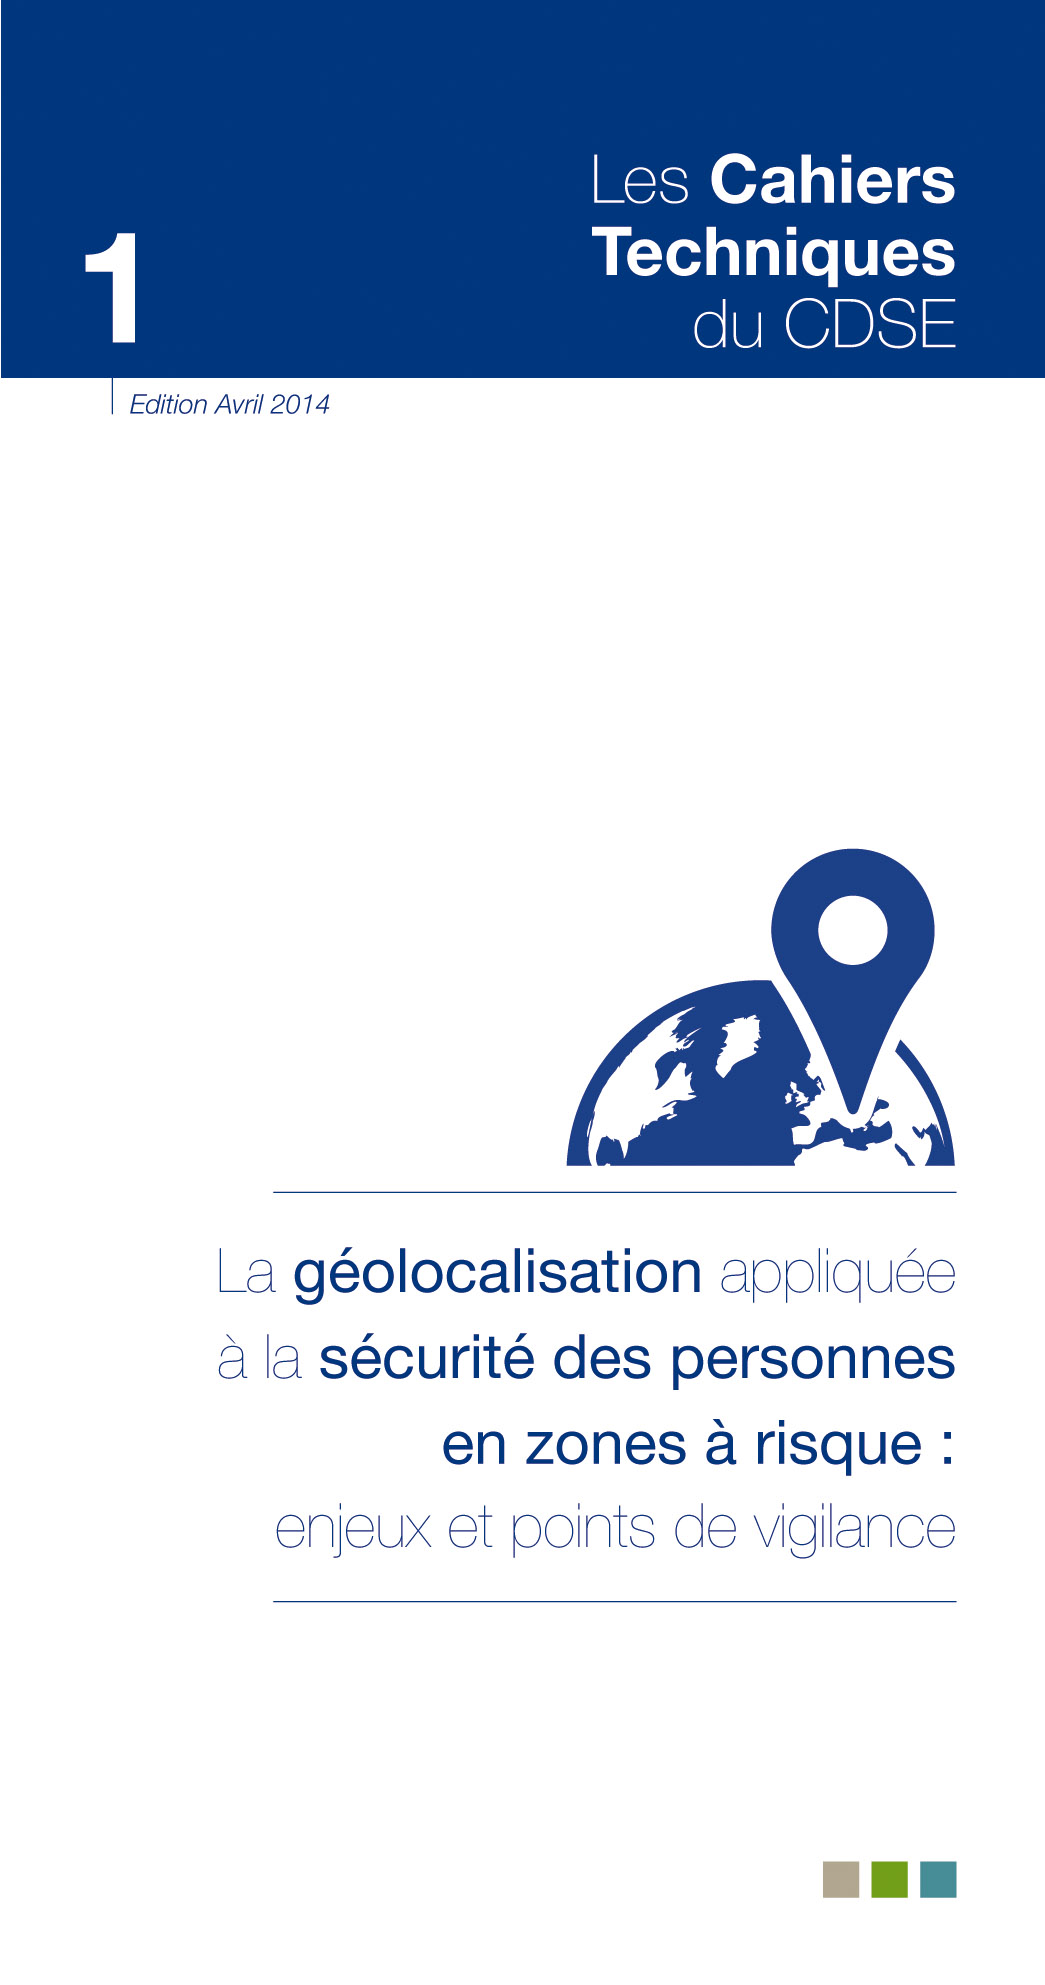 La géolocalisation appliquée à la sécurité des personnes en zones à risque : enjeux et points de vigilance